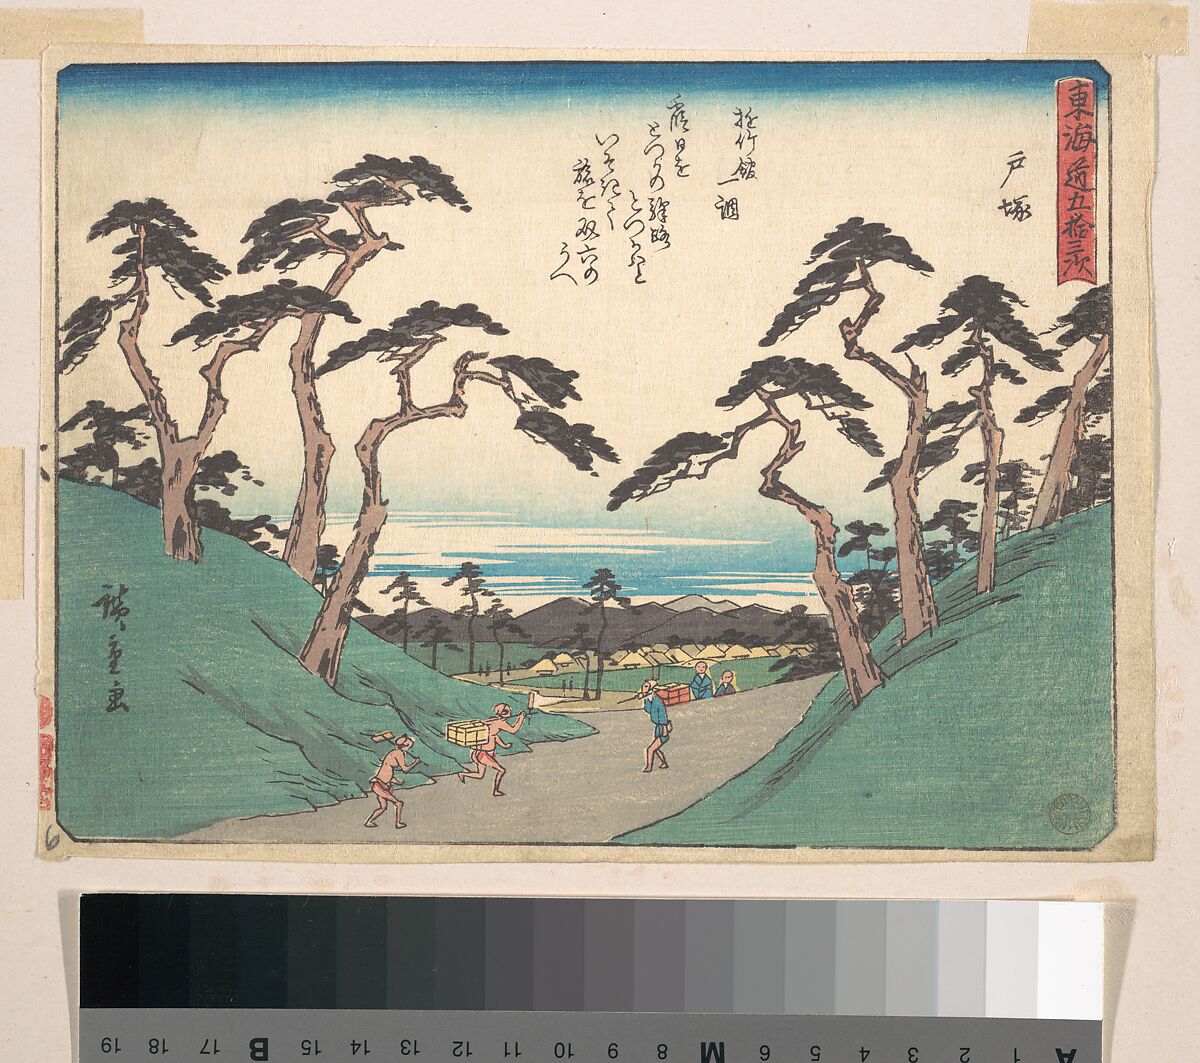 Totsuka, Utagawa Hiroshige (Japanese, Tokyo (Edo) 1797–1858 Tokyo (Edo)), Woodblock print; ink and color on paper, Japan 